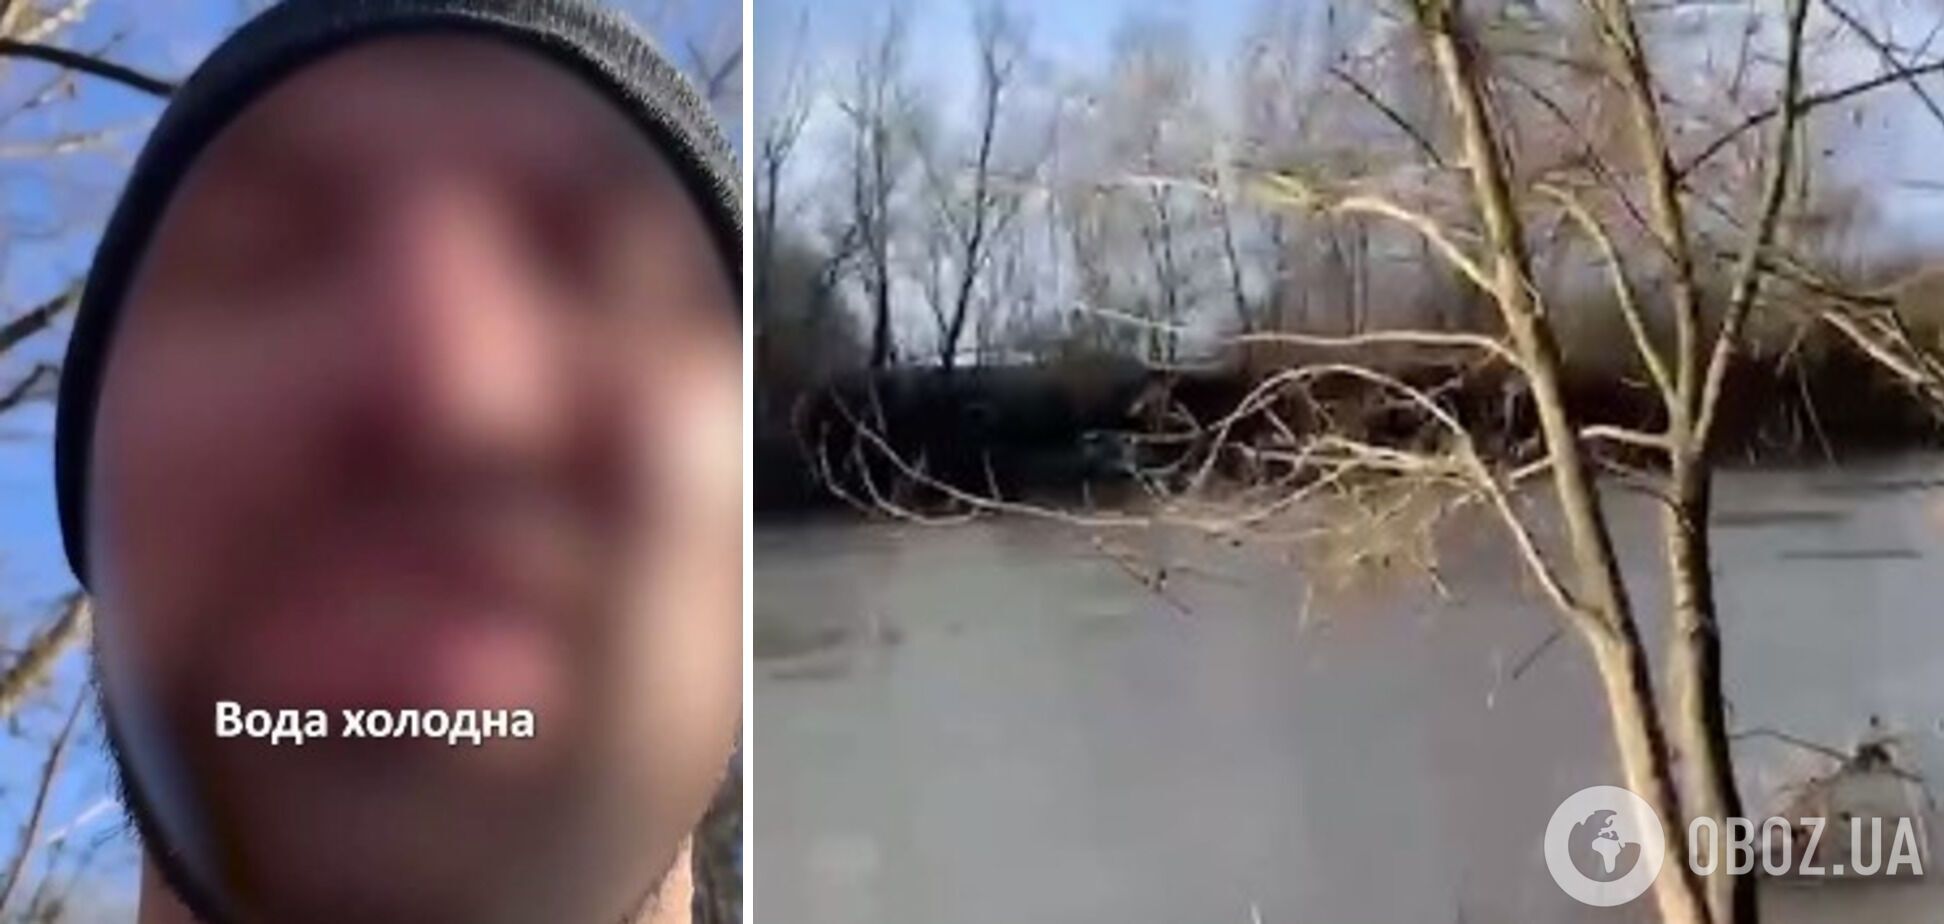 "Помолився і поїхав у бік кордону": українець розповів, як намагався переплисти Тису посеред зими, щоб потрапити в Угорщину. Відео